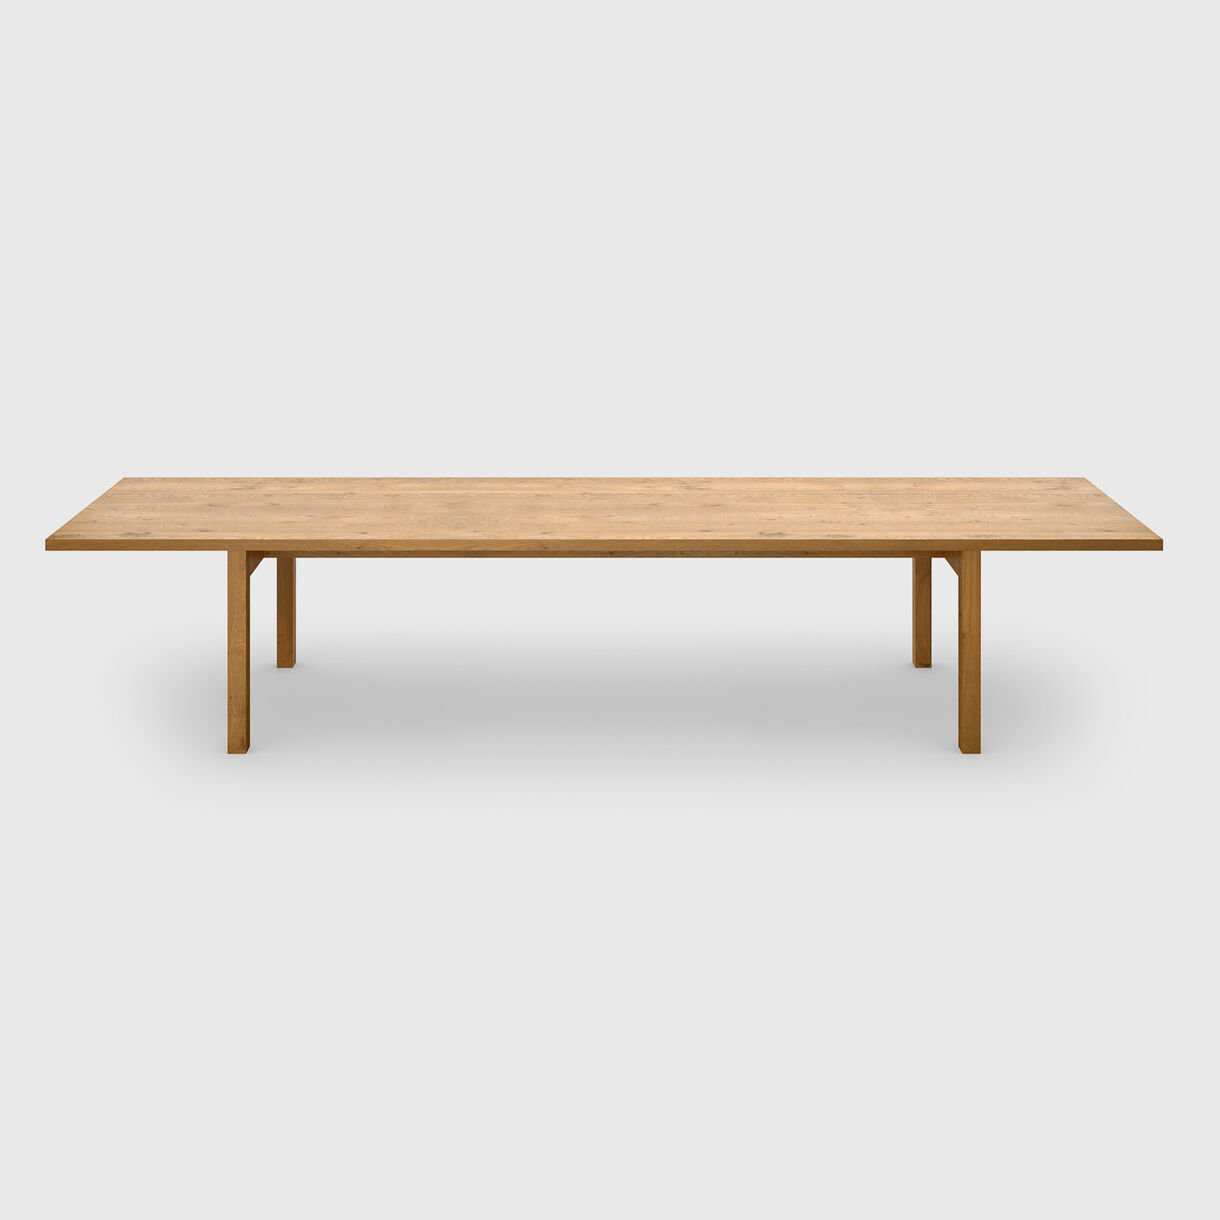 Galerie Table, 3900mm, Oak